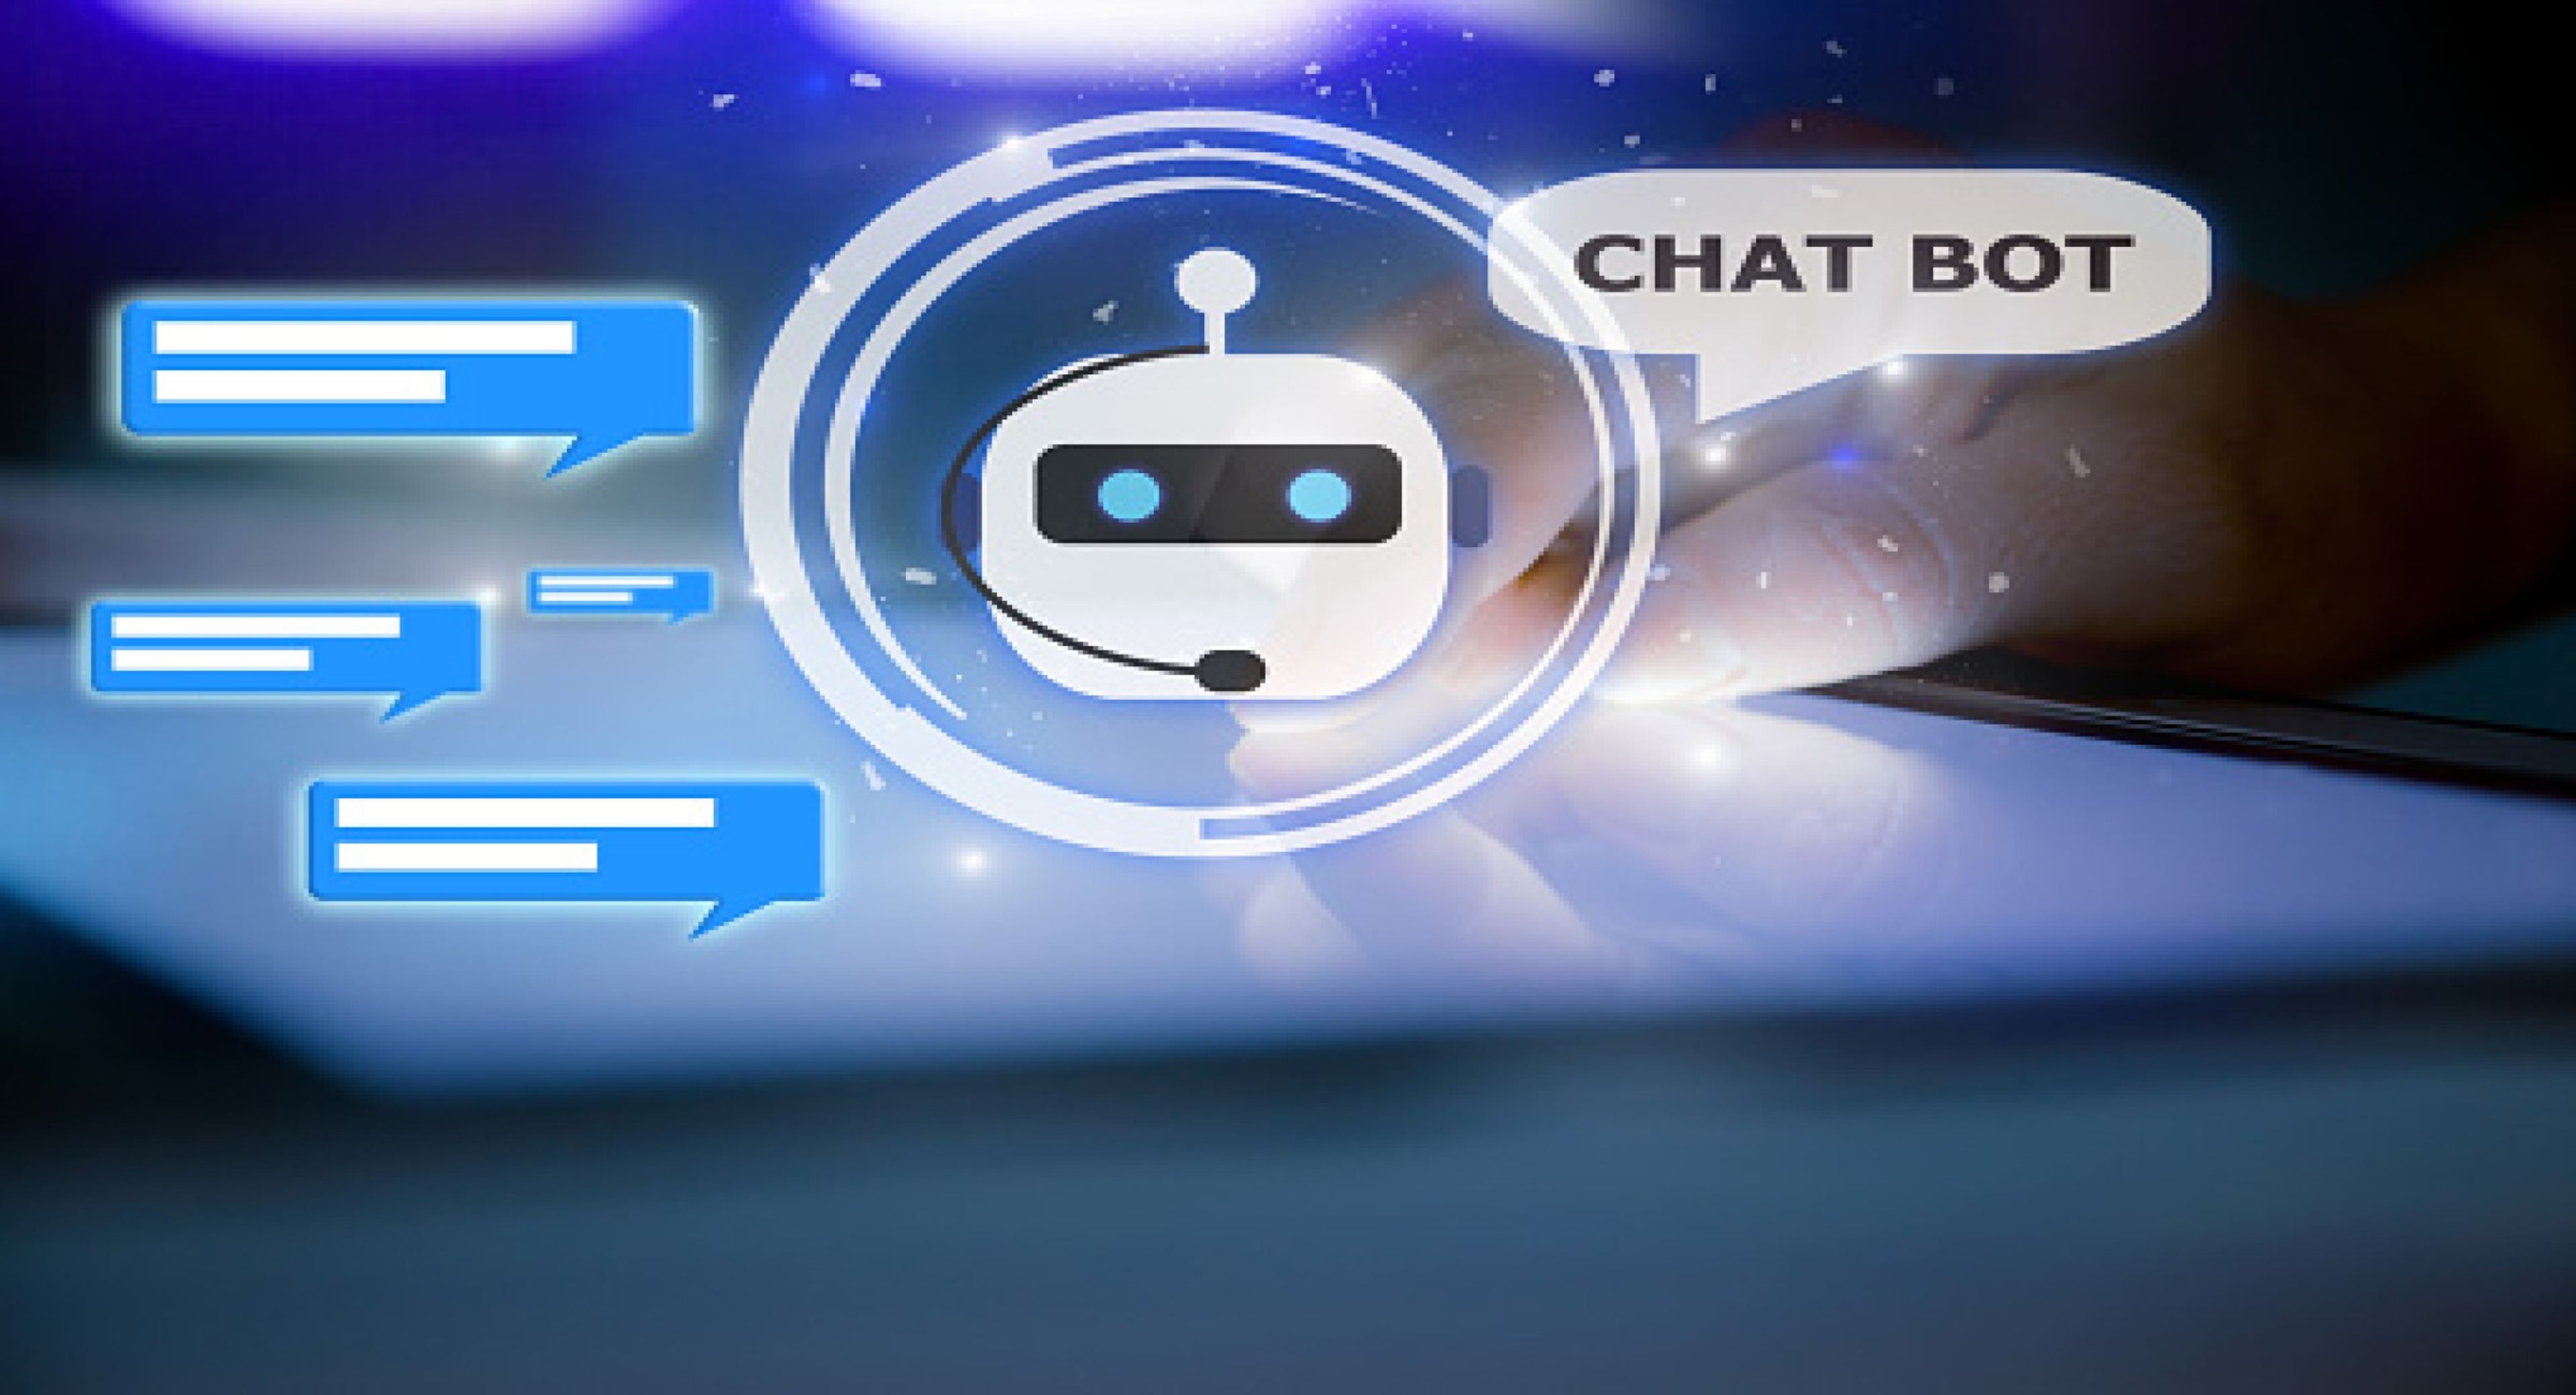 La ouija virtual: Microsoft patenta un chatbot para hablar con los muertos